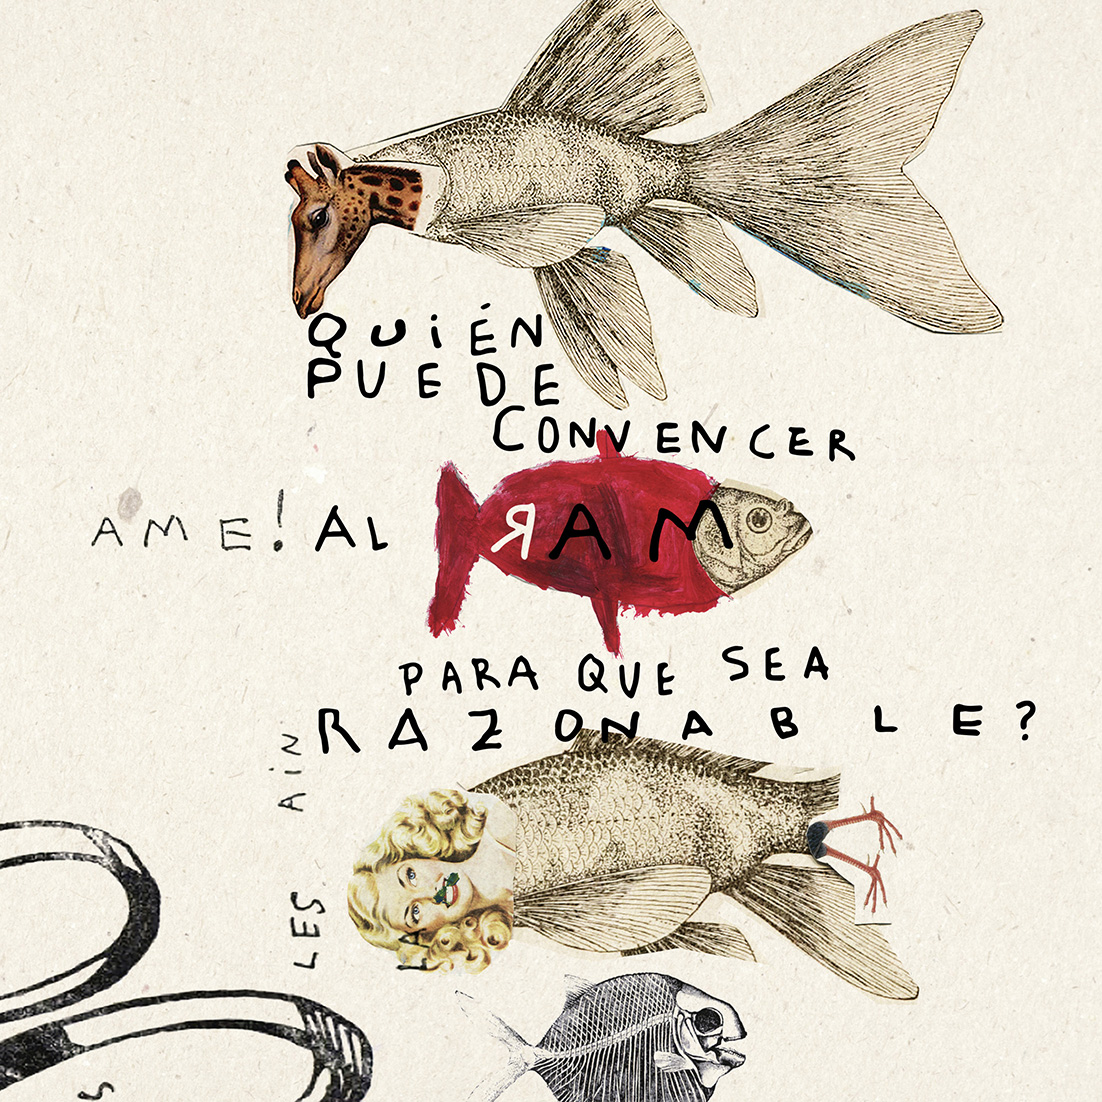 Collage courtesy of La Casa de Carlota, inspired by Chilean poet Pablo Neruda's “Quién puede convencer al mar” [Who can convince the sea (to be reasonable) © La Casa de Carlota